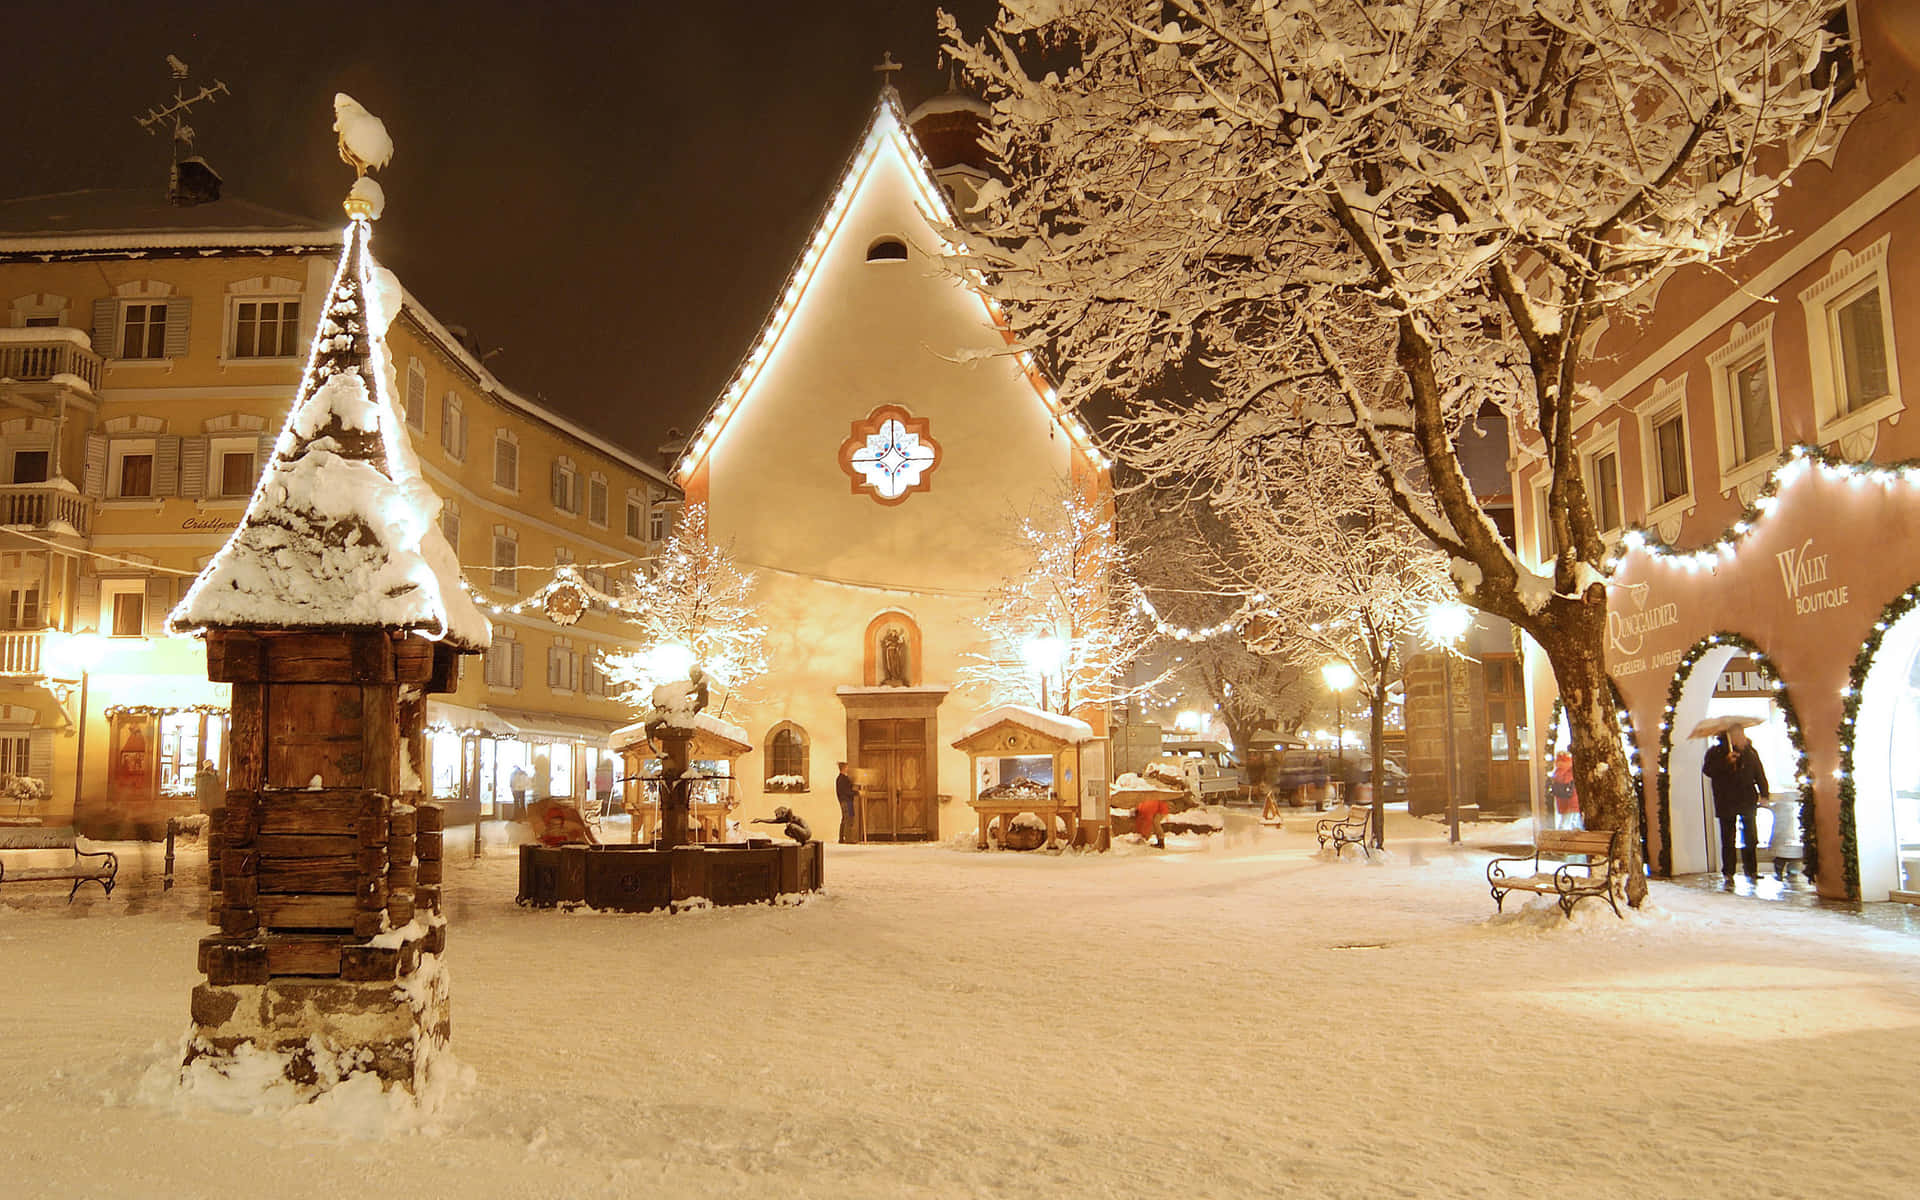 Firahögtiden Med En Fantastisk Julbakgrund Med Snöiga Motiv!